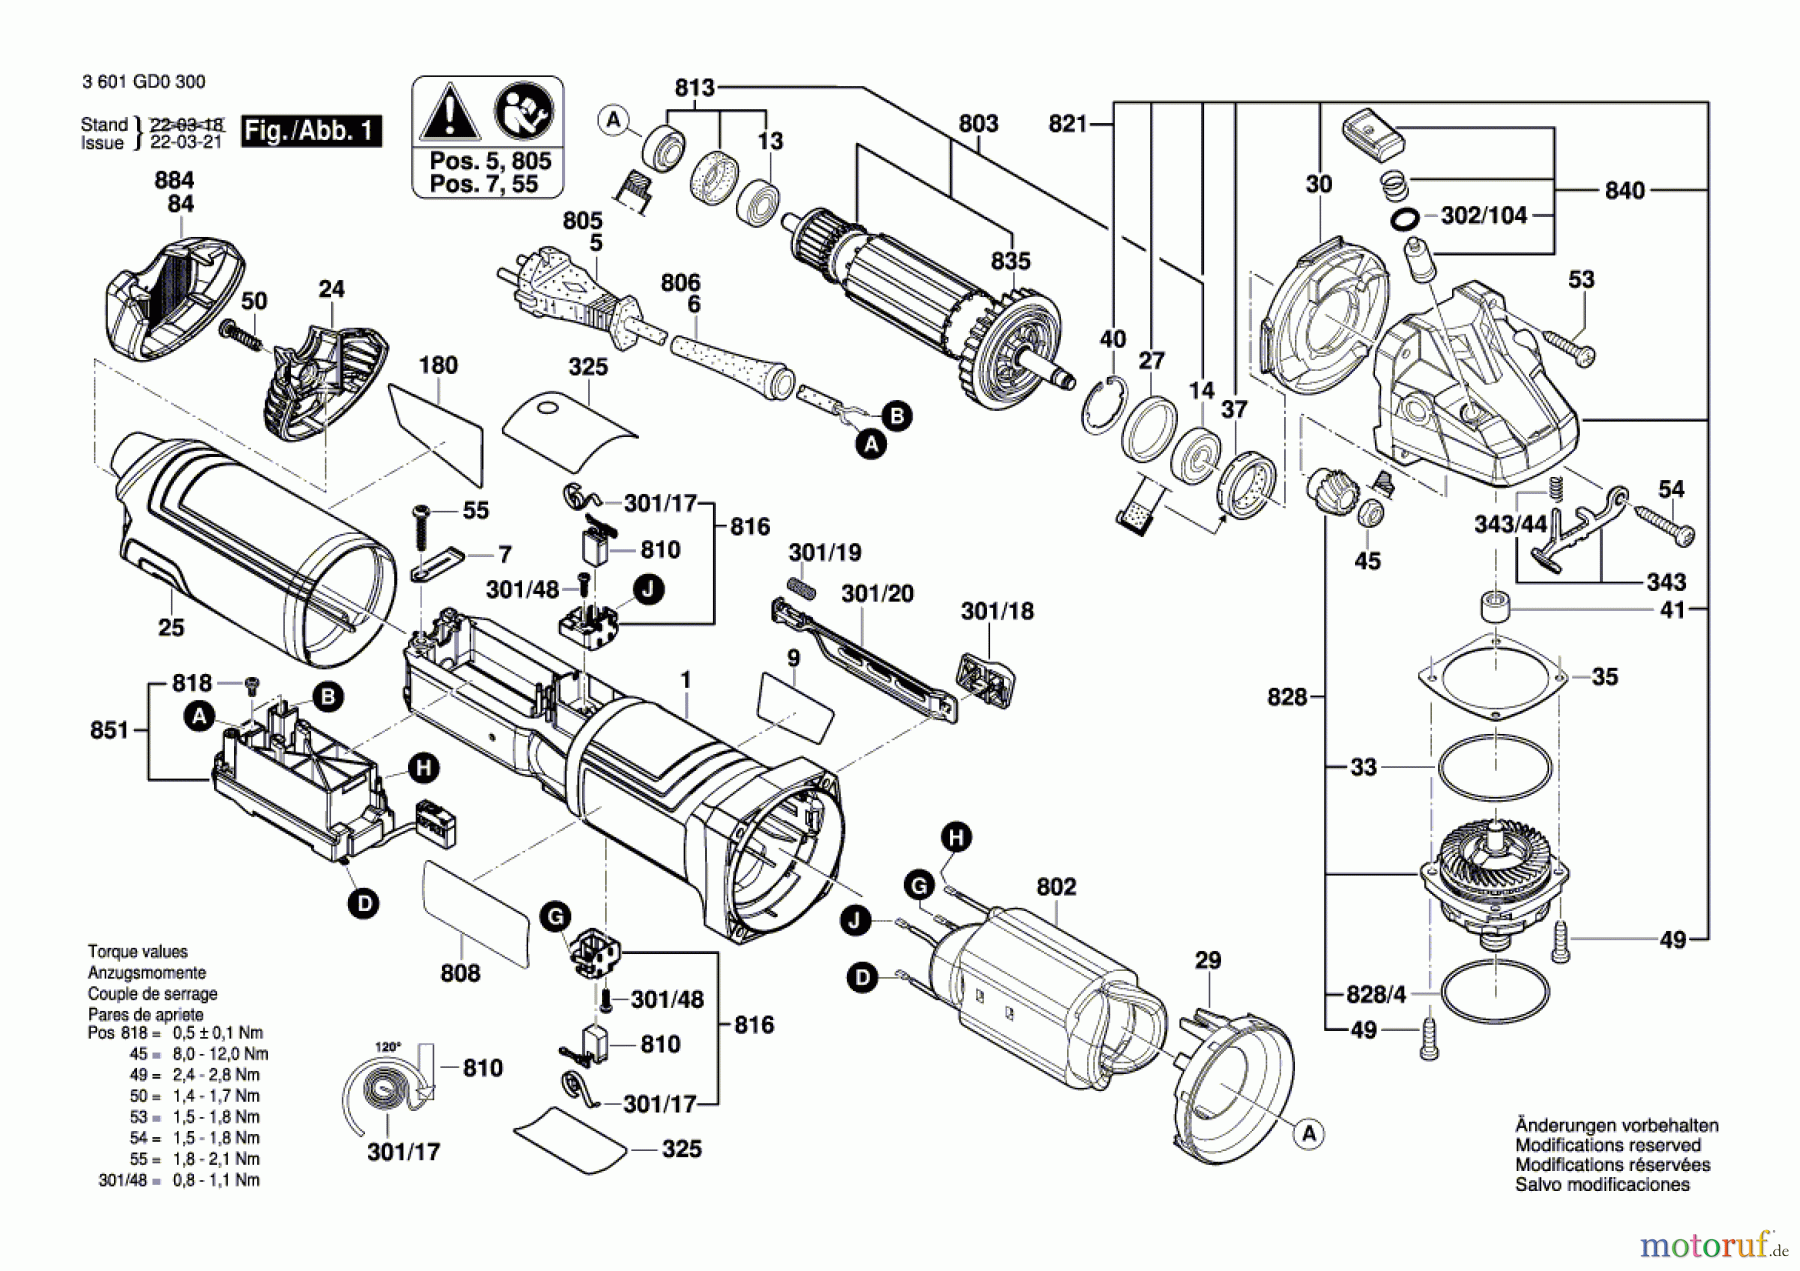  Bosch Werkzeug Winkelschleifer GWS 17-125 S Seite 1